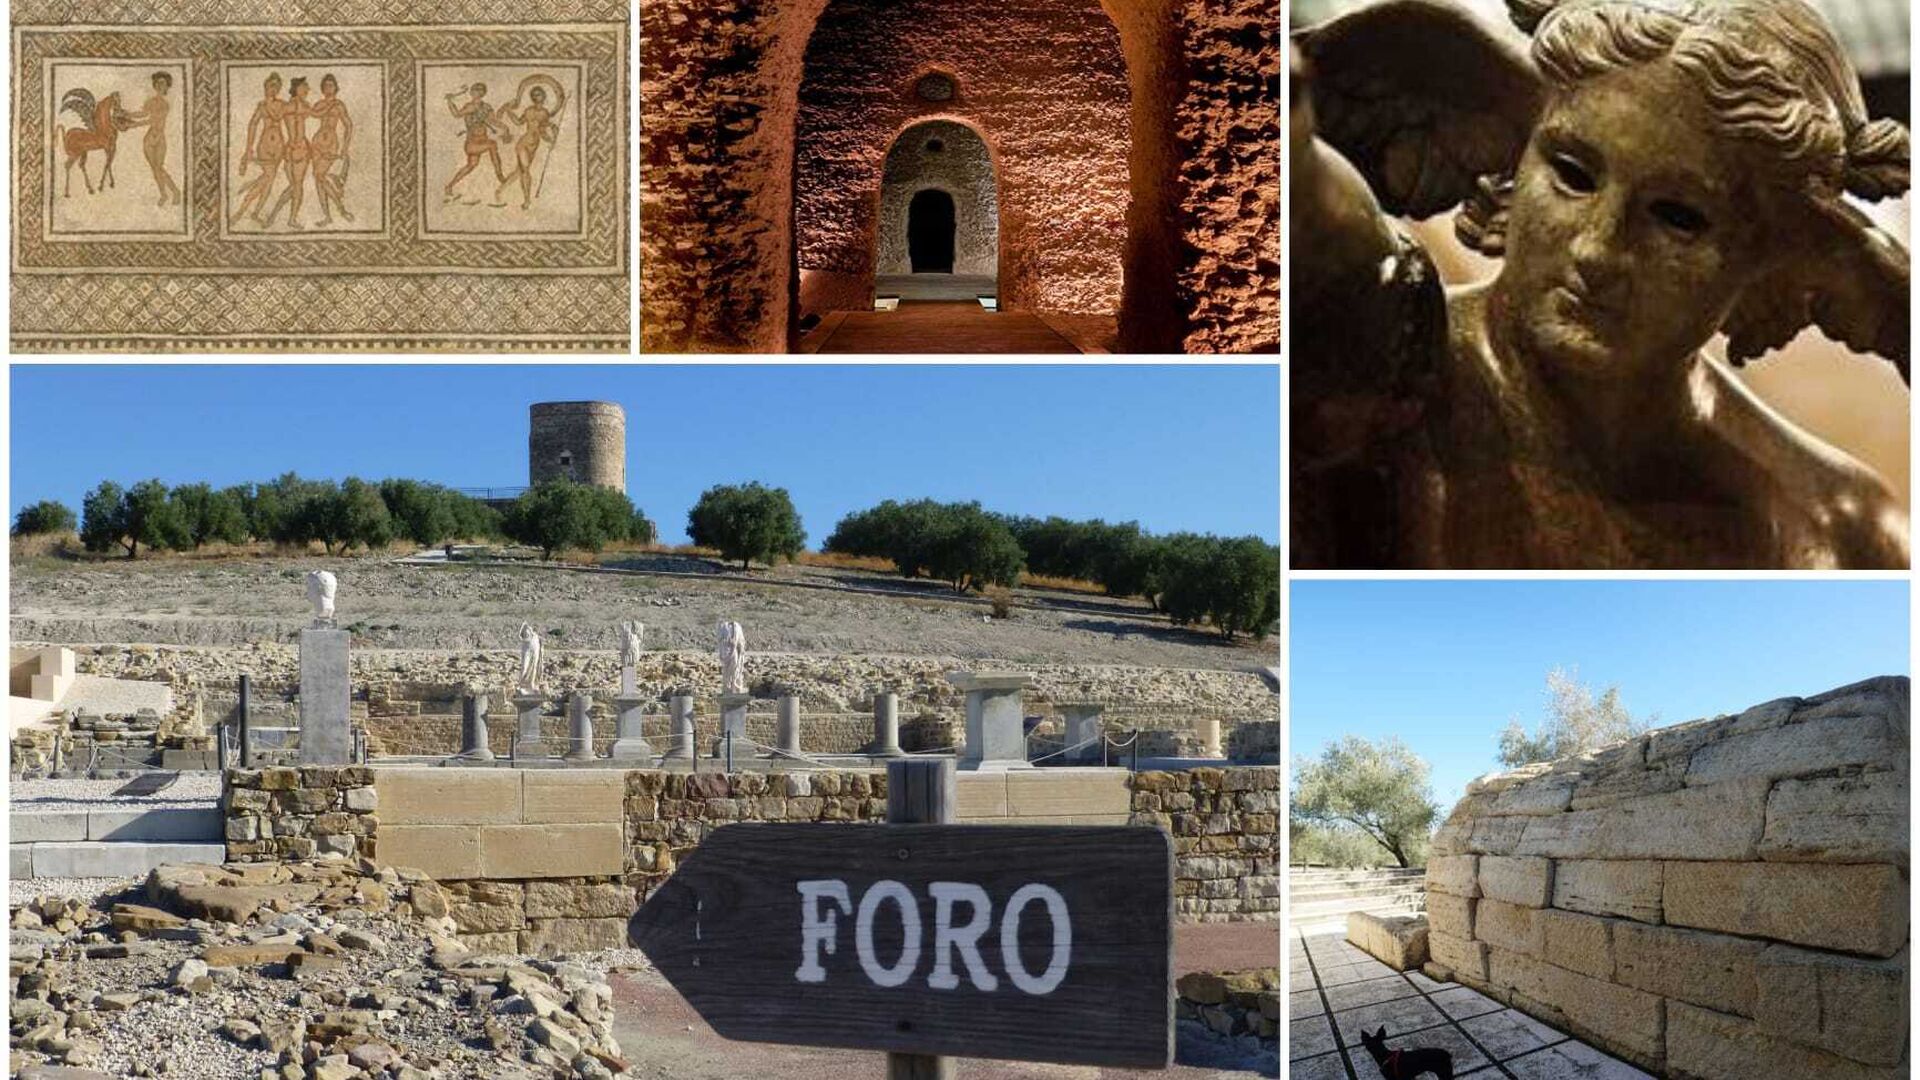 versus Decano Solicitud Un viaje por el legado romano de la provincia de Córdoba en 13 paradas  imprescindibles